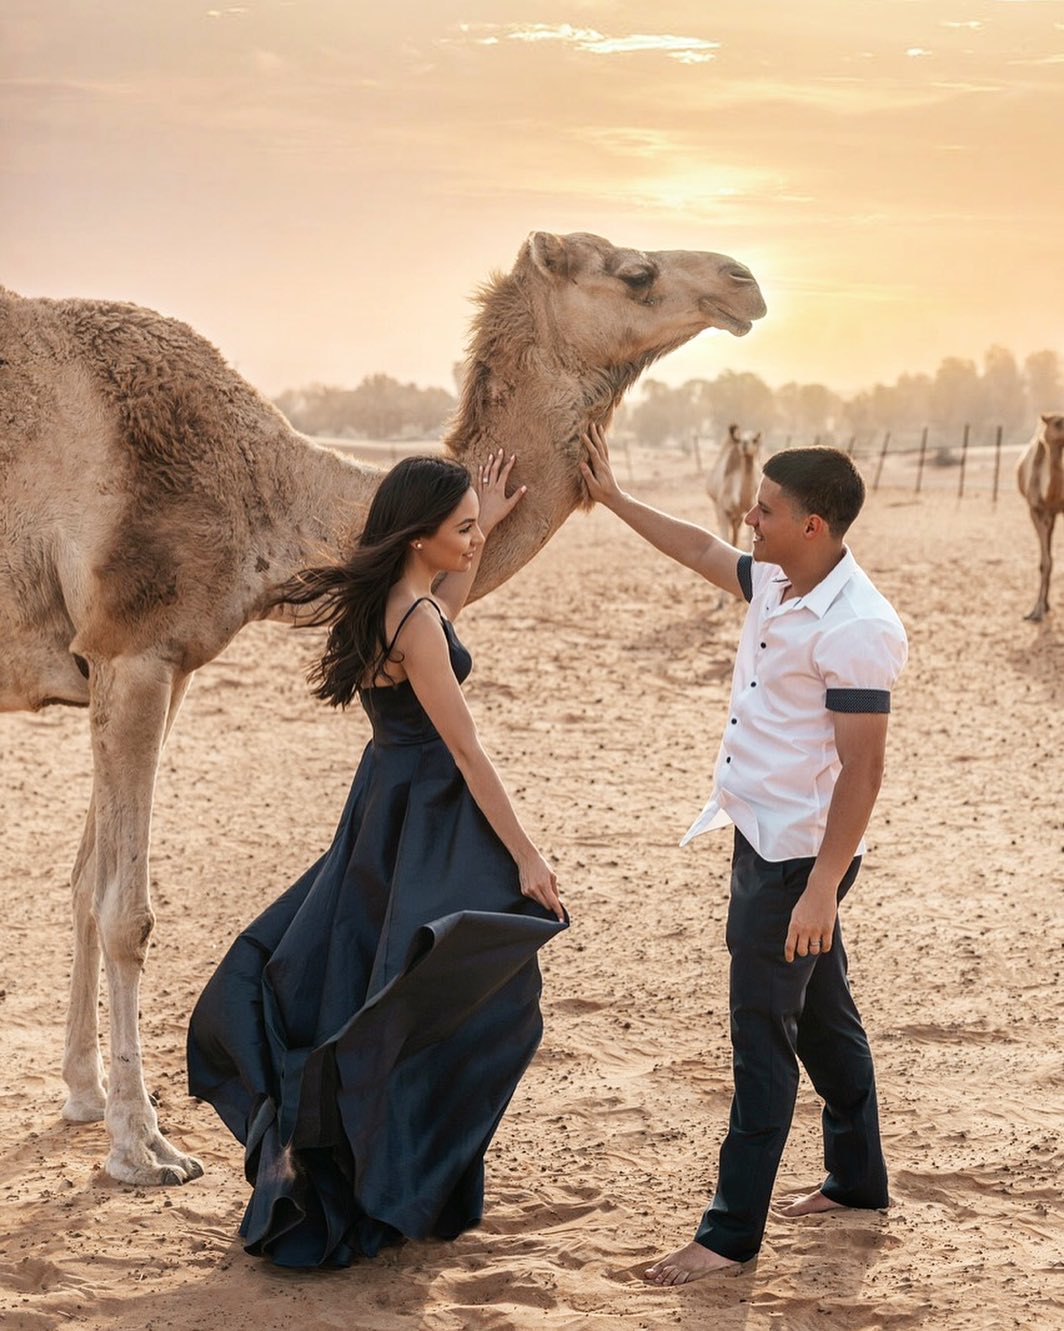 Молодая пара позирует с верблюдом в пустыне Дубая.